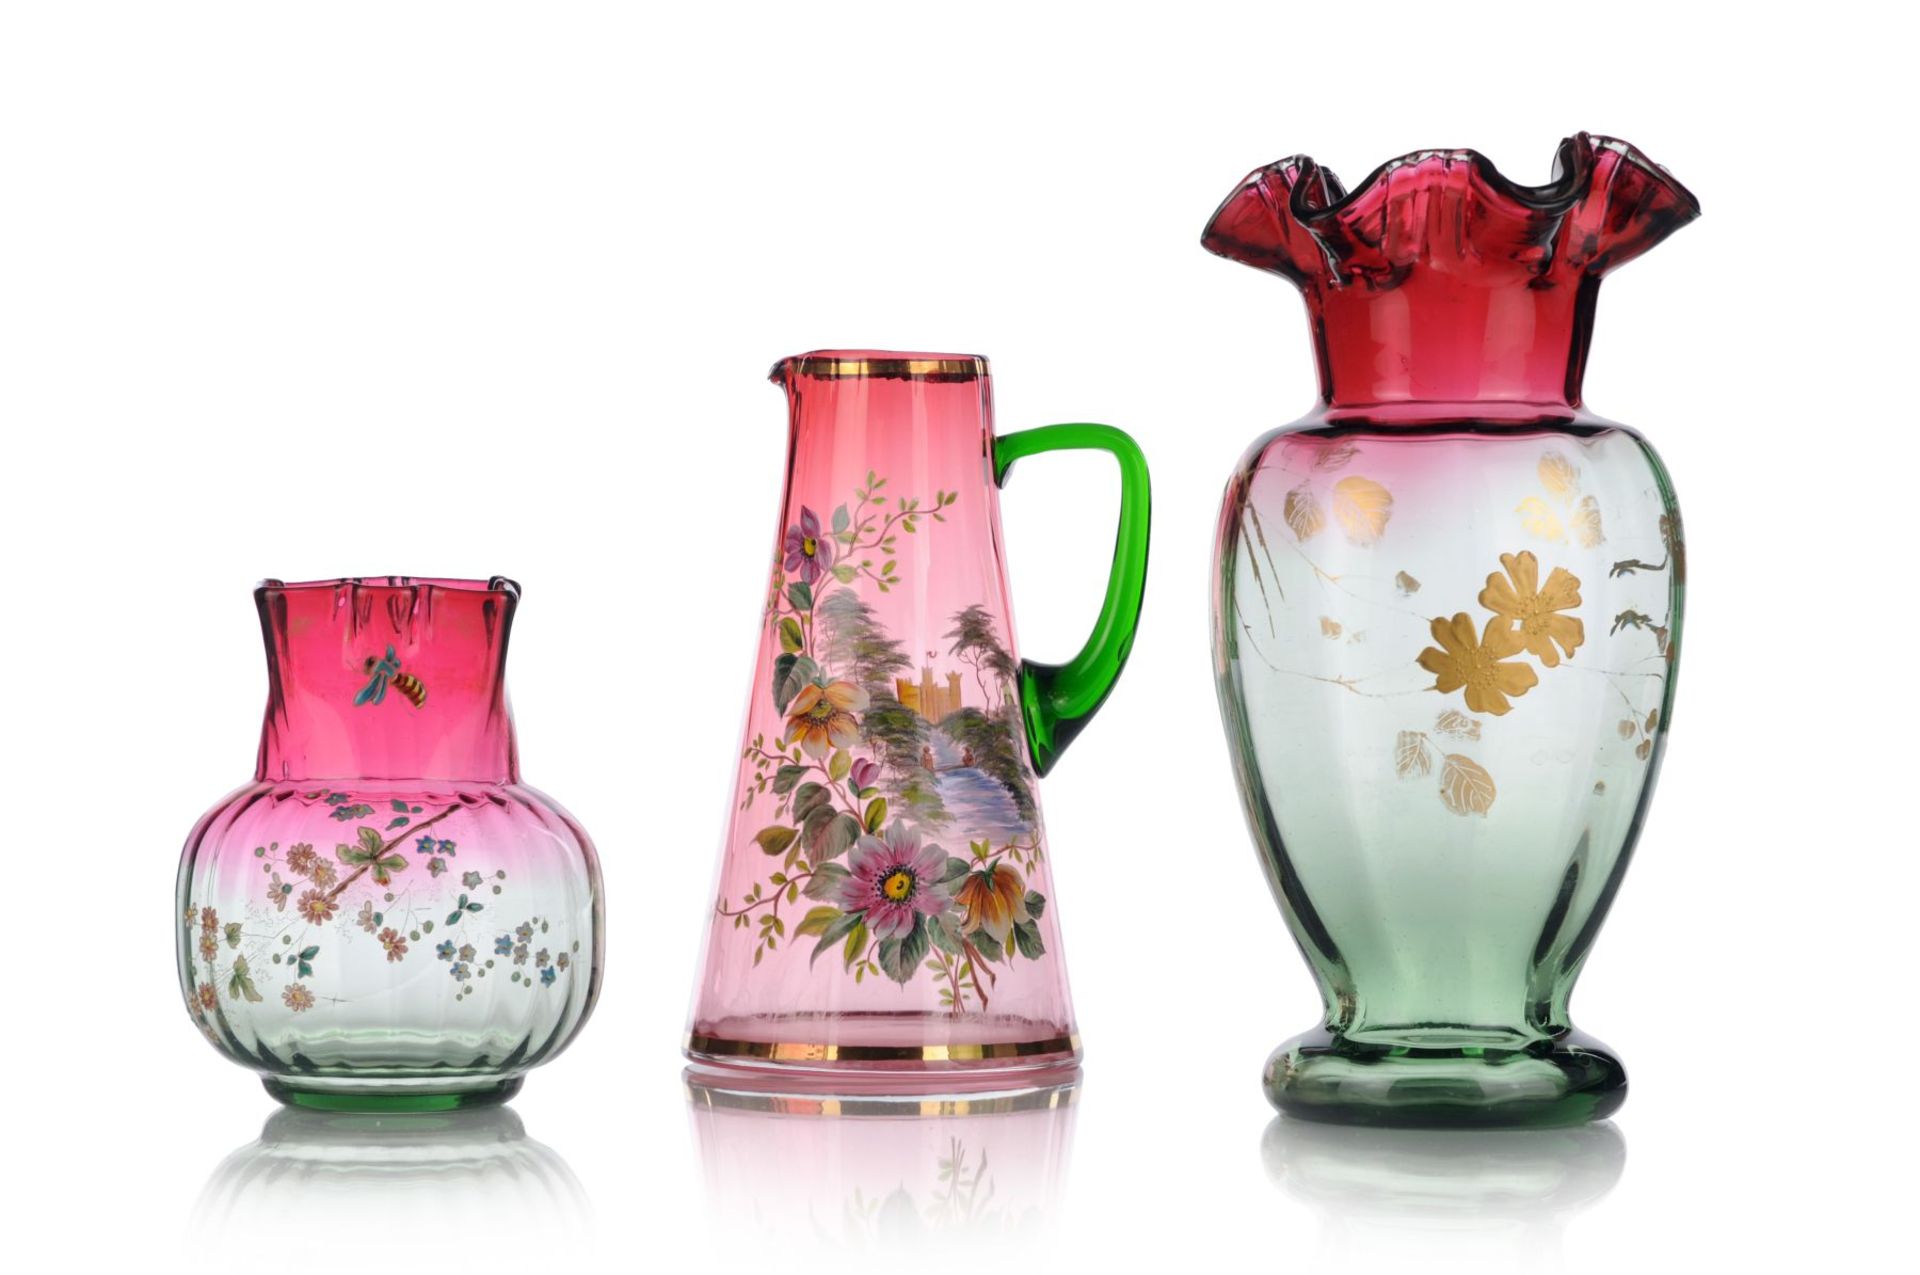 Henkelkrug / Hohe Vase / Kleine Vase. Böhmen. Wohl um 1900. Magentafarben und grün getöntes Glas,